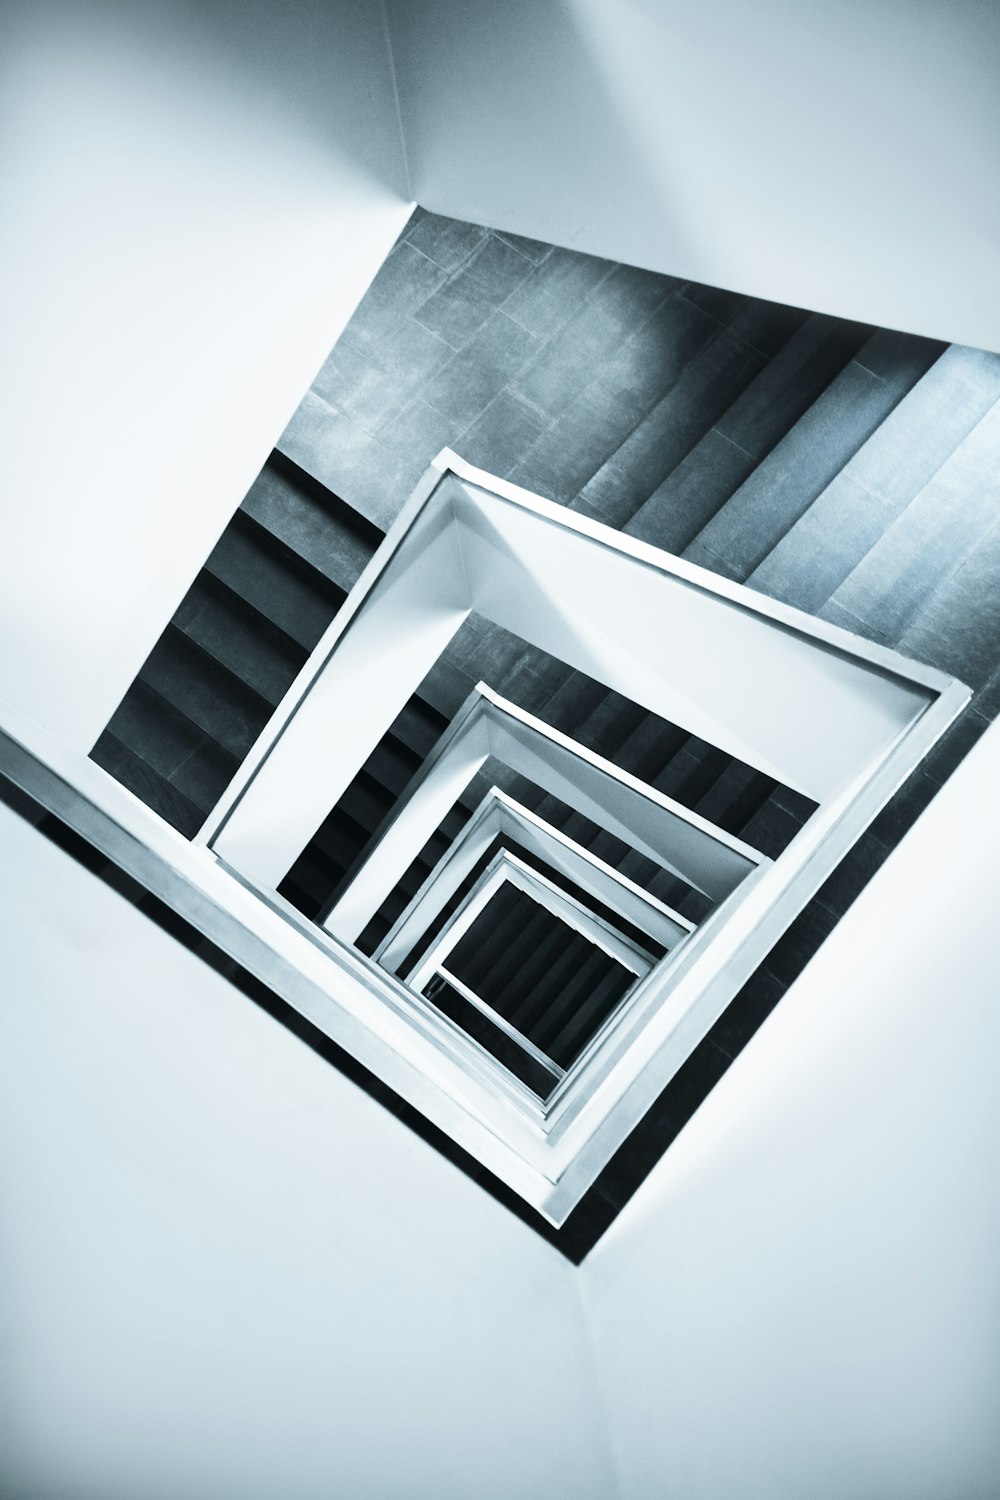 uma foto em preto e branco de uma escada